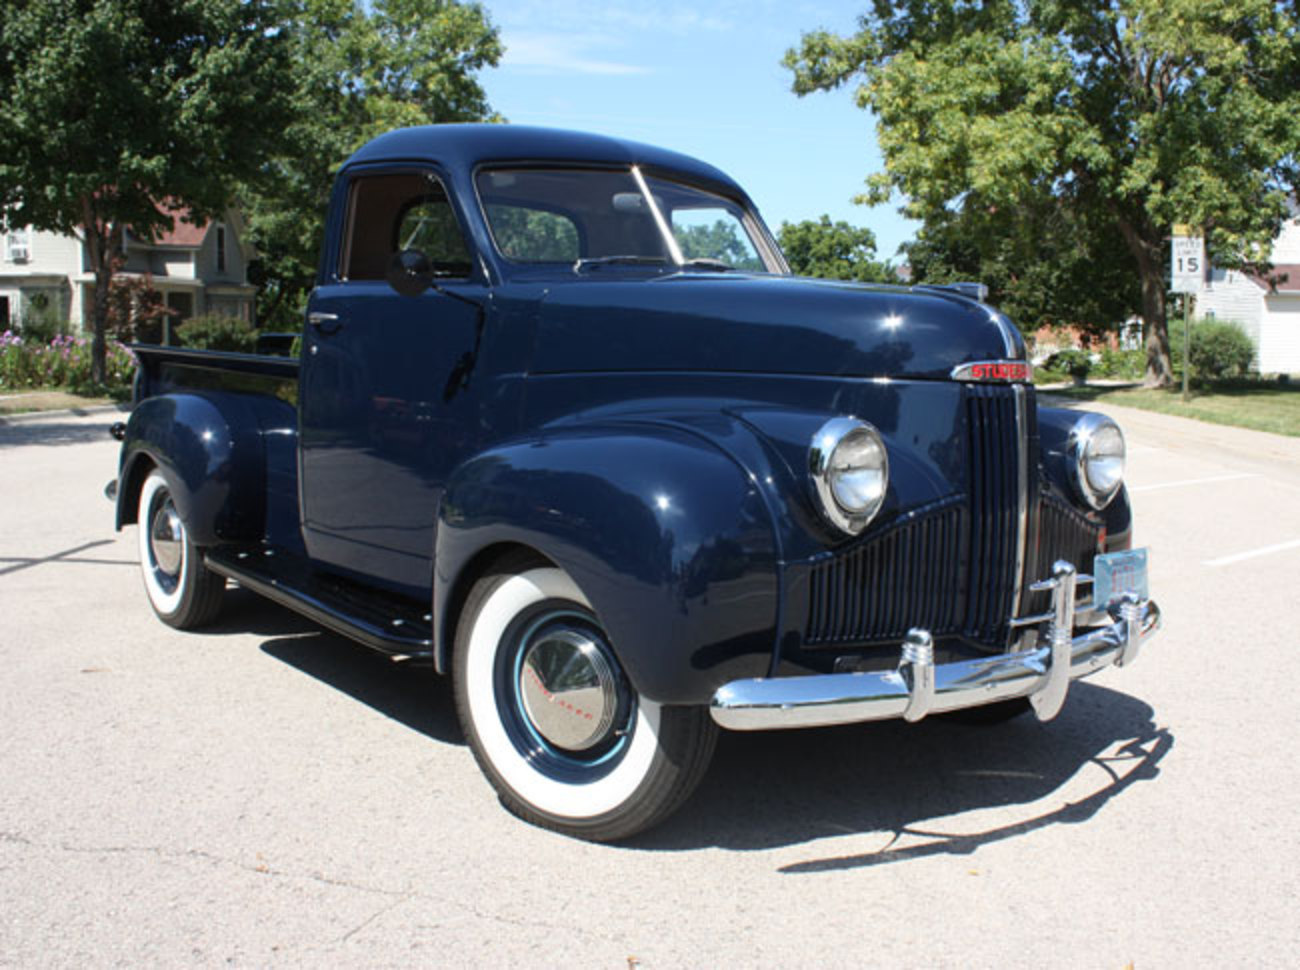 Car of the Week: 1947 Studebaker pickup